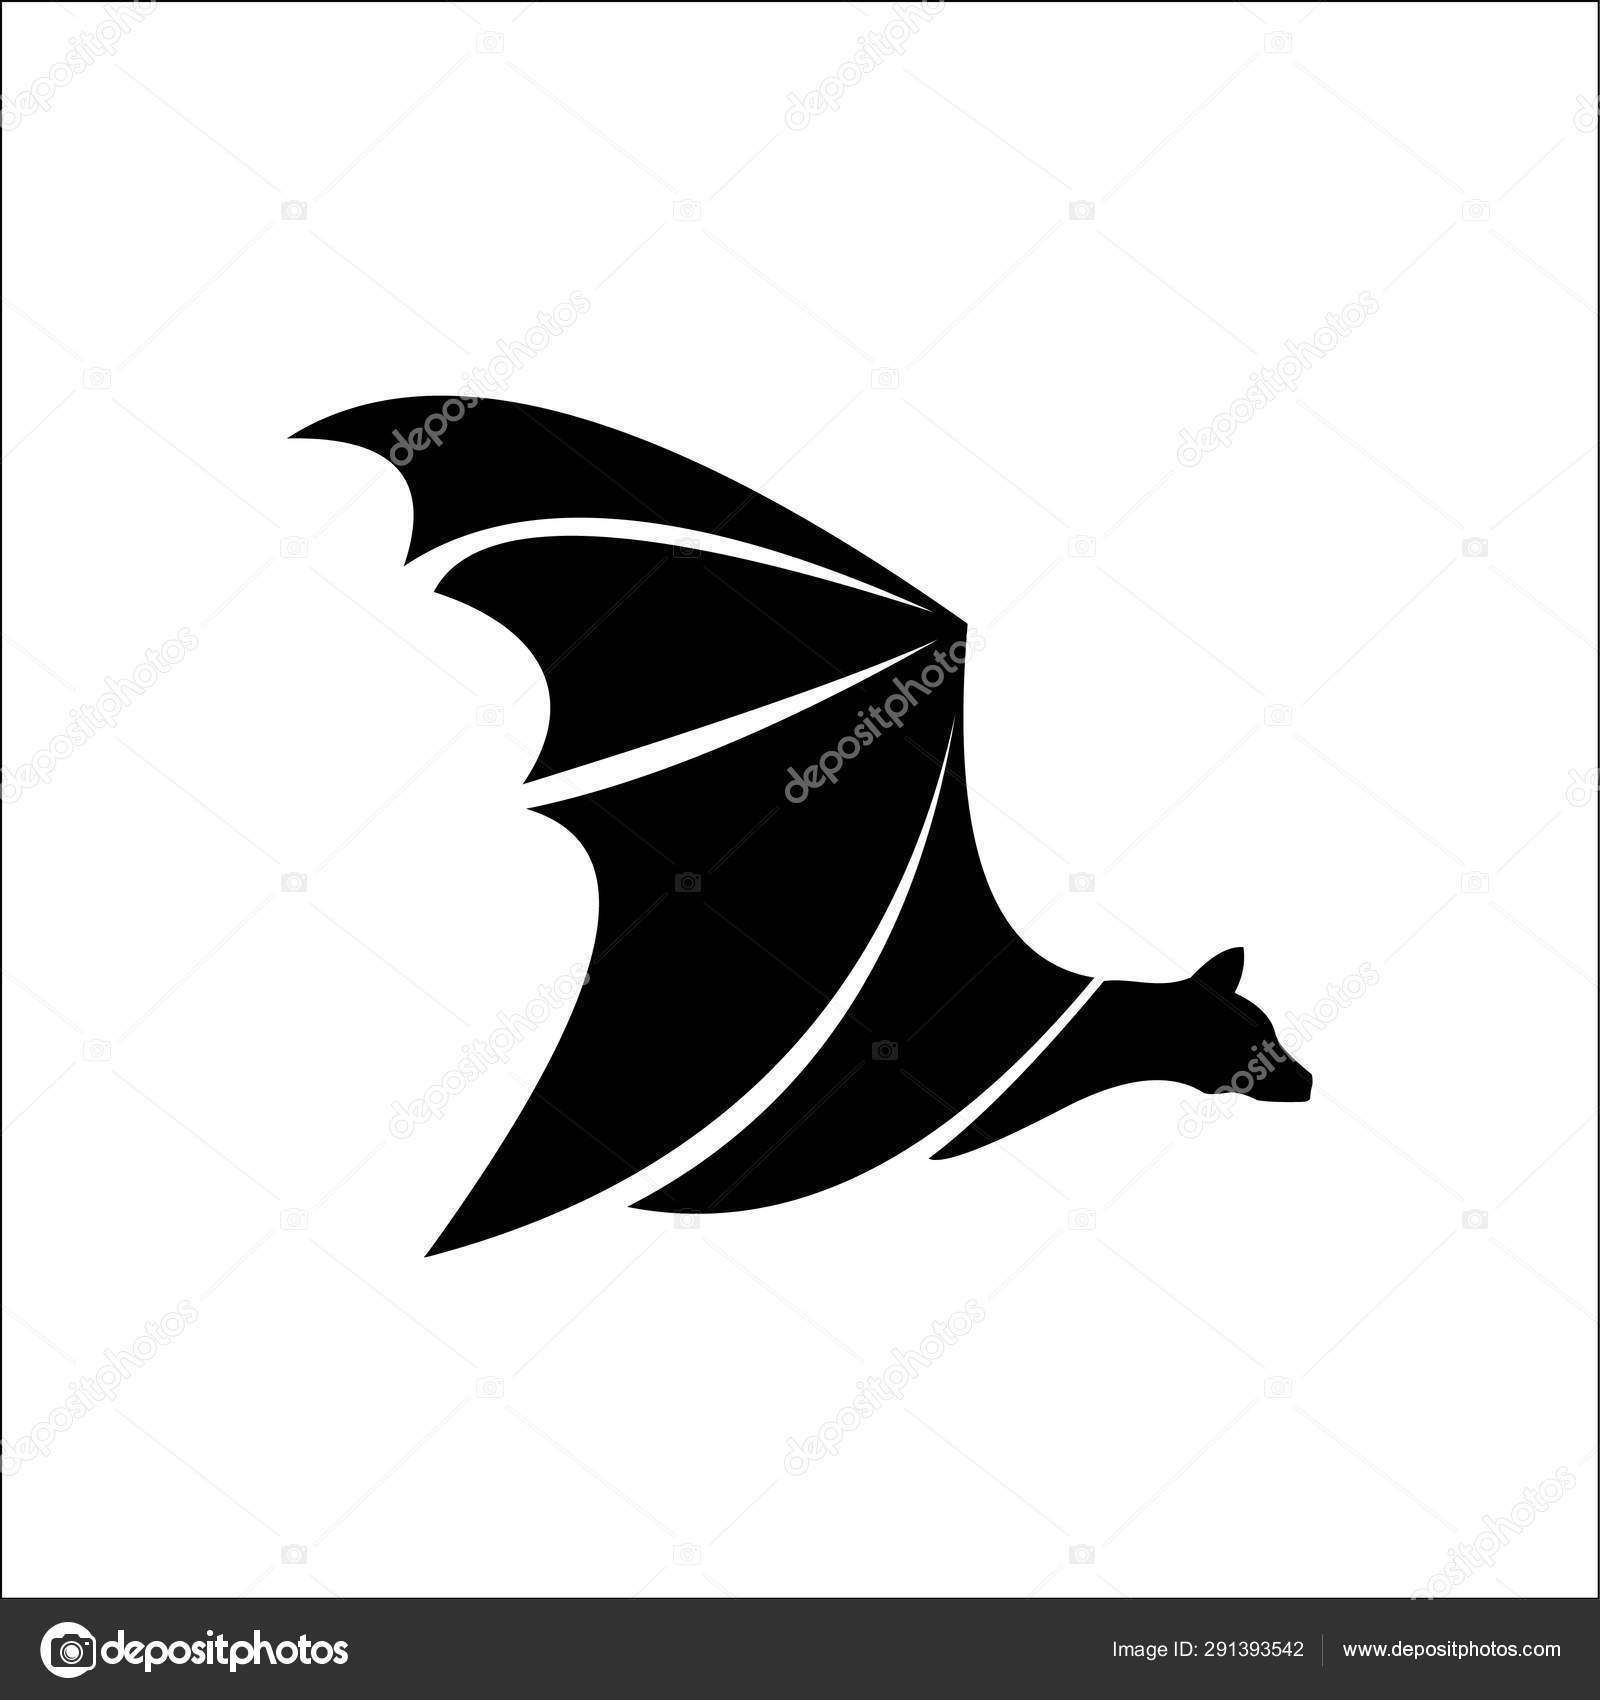 Bat logotipo modelo ícone do vetor ilustração imagem vetorial de © starwash  #291393542